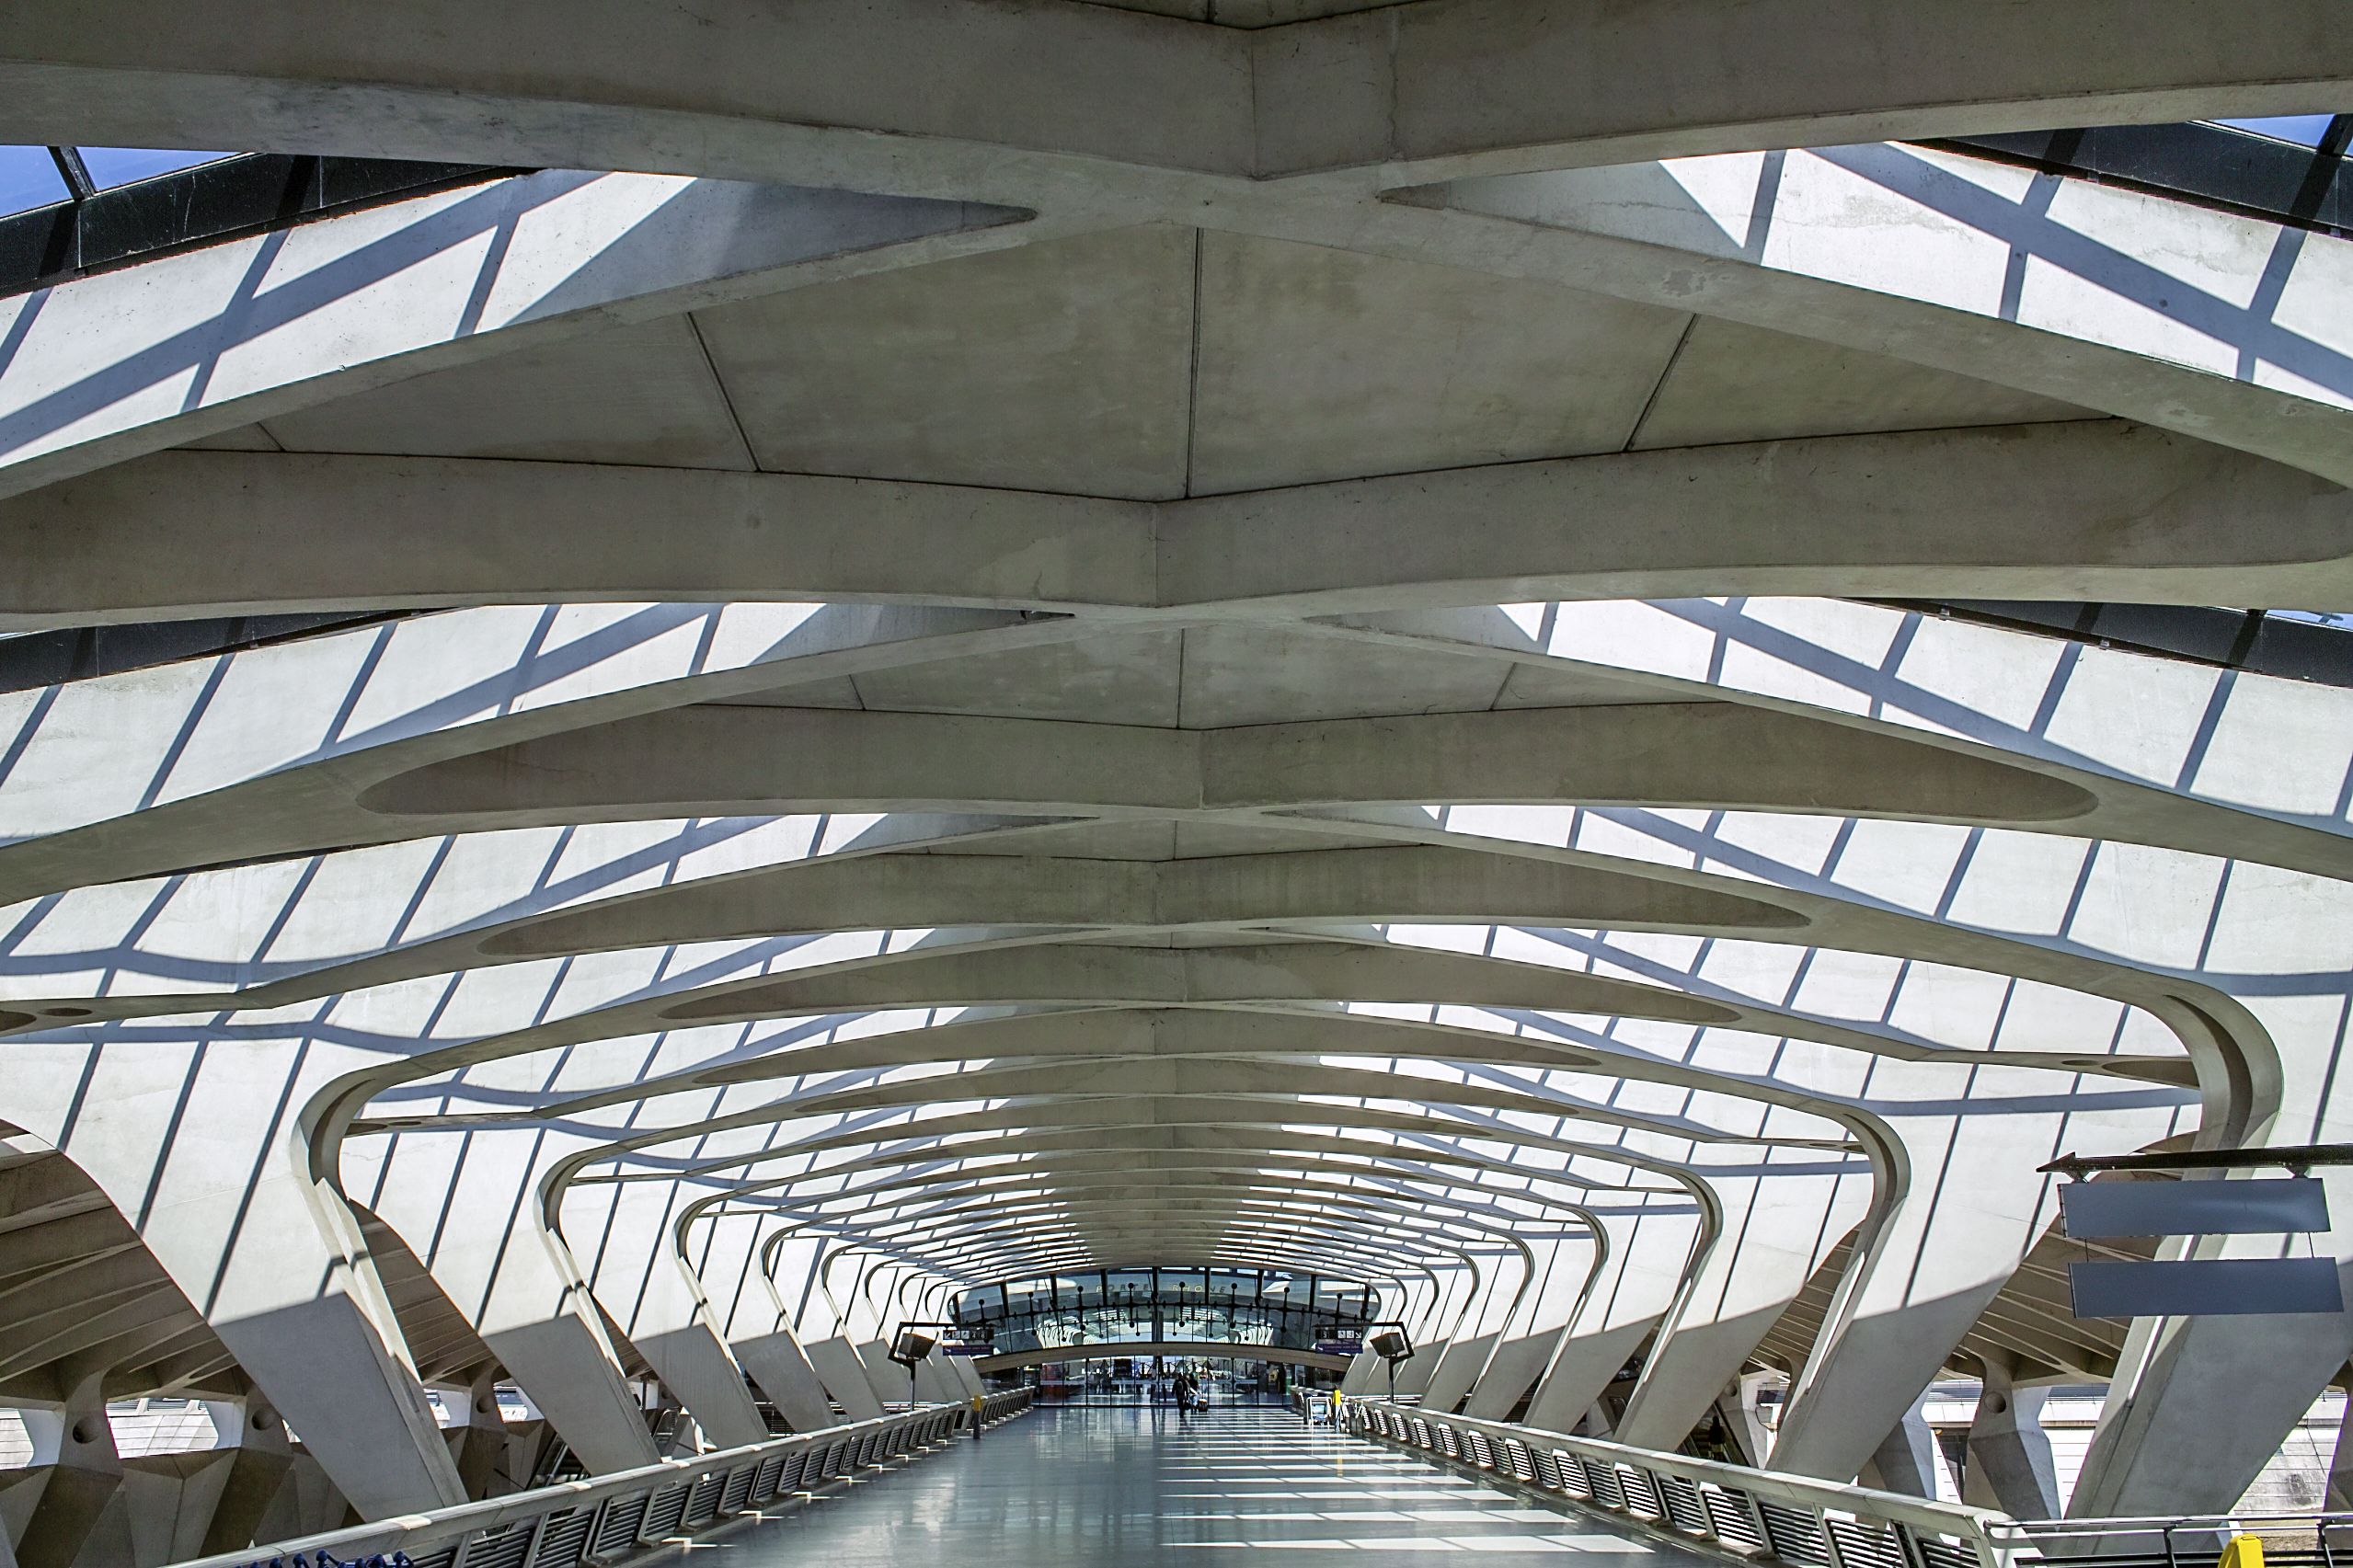 Impressive architecture at Lyon–Saint Exupéry Airport